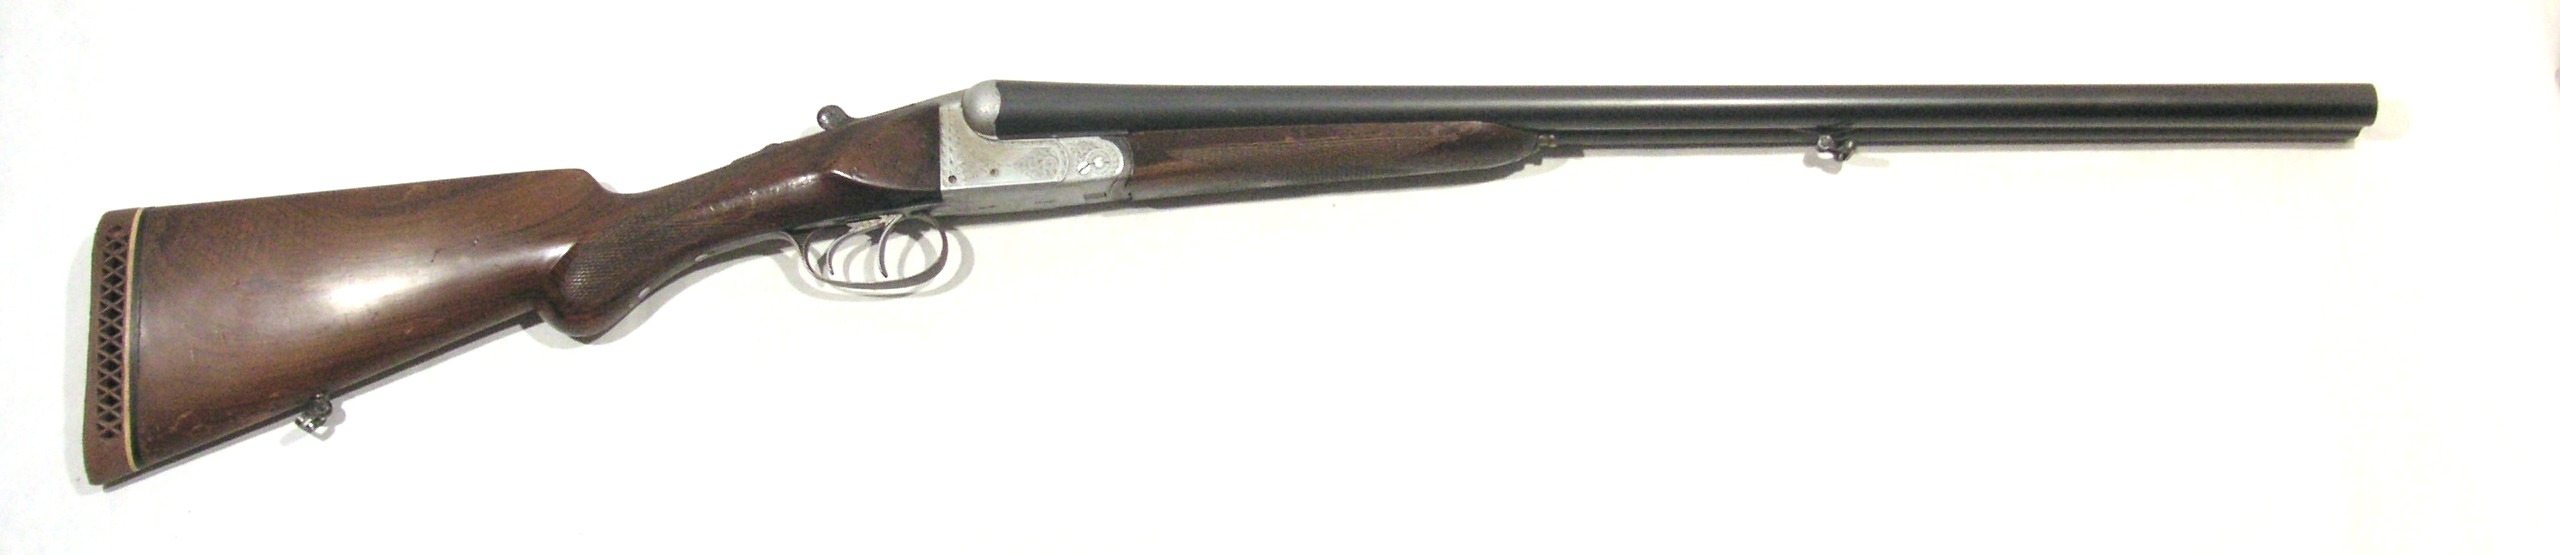 Escopeta JABALI, modelo 4, cal.12, nº 12166-0